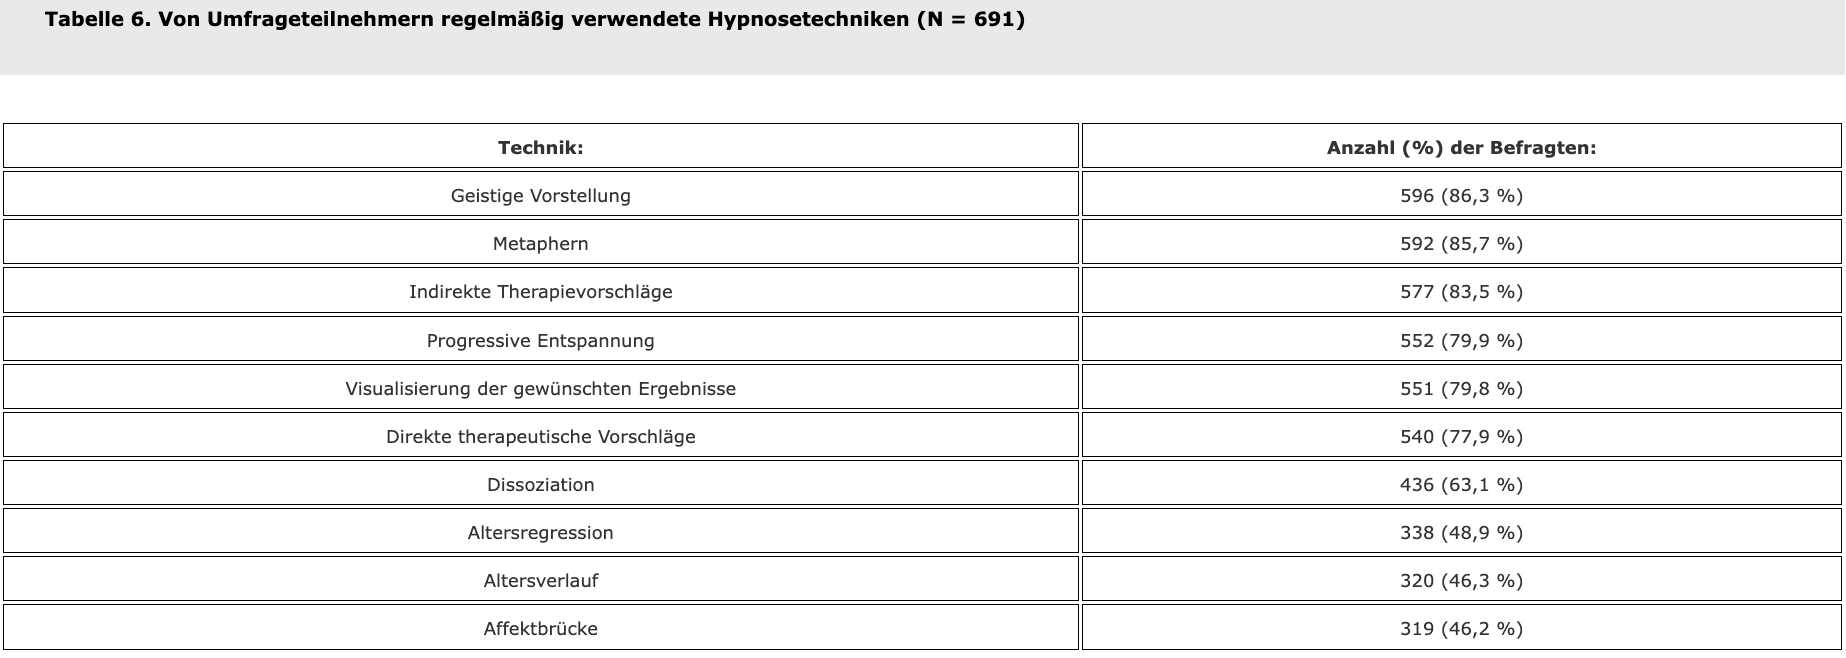 Tabelle 6. Von Umfrageteilnehmern regelmäßig verwendete Hypnosetechniken (N = 691)